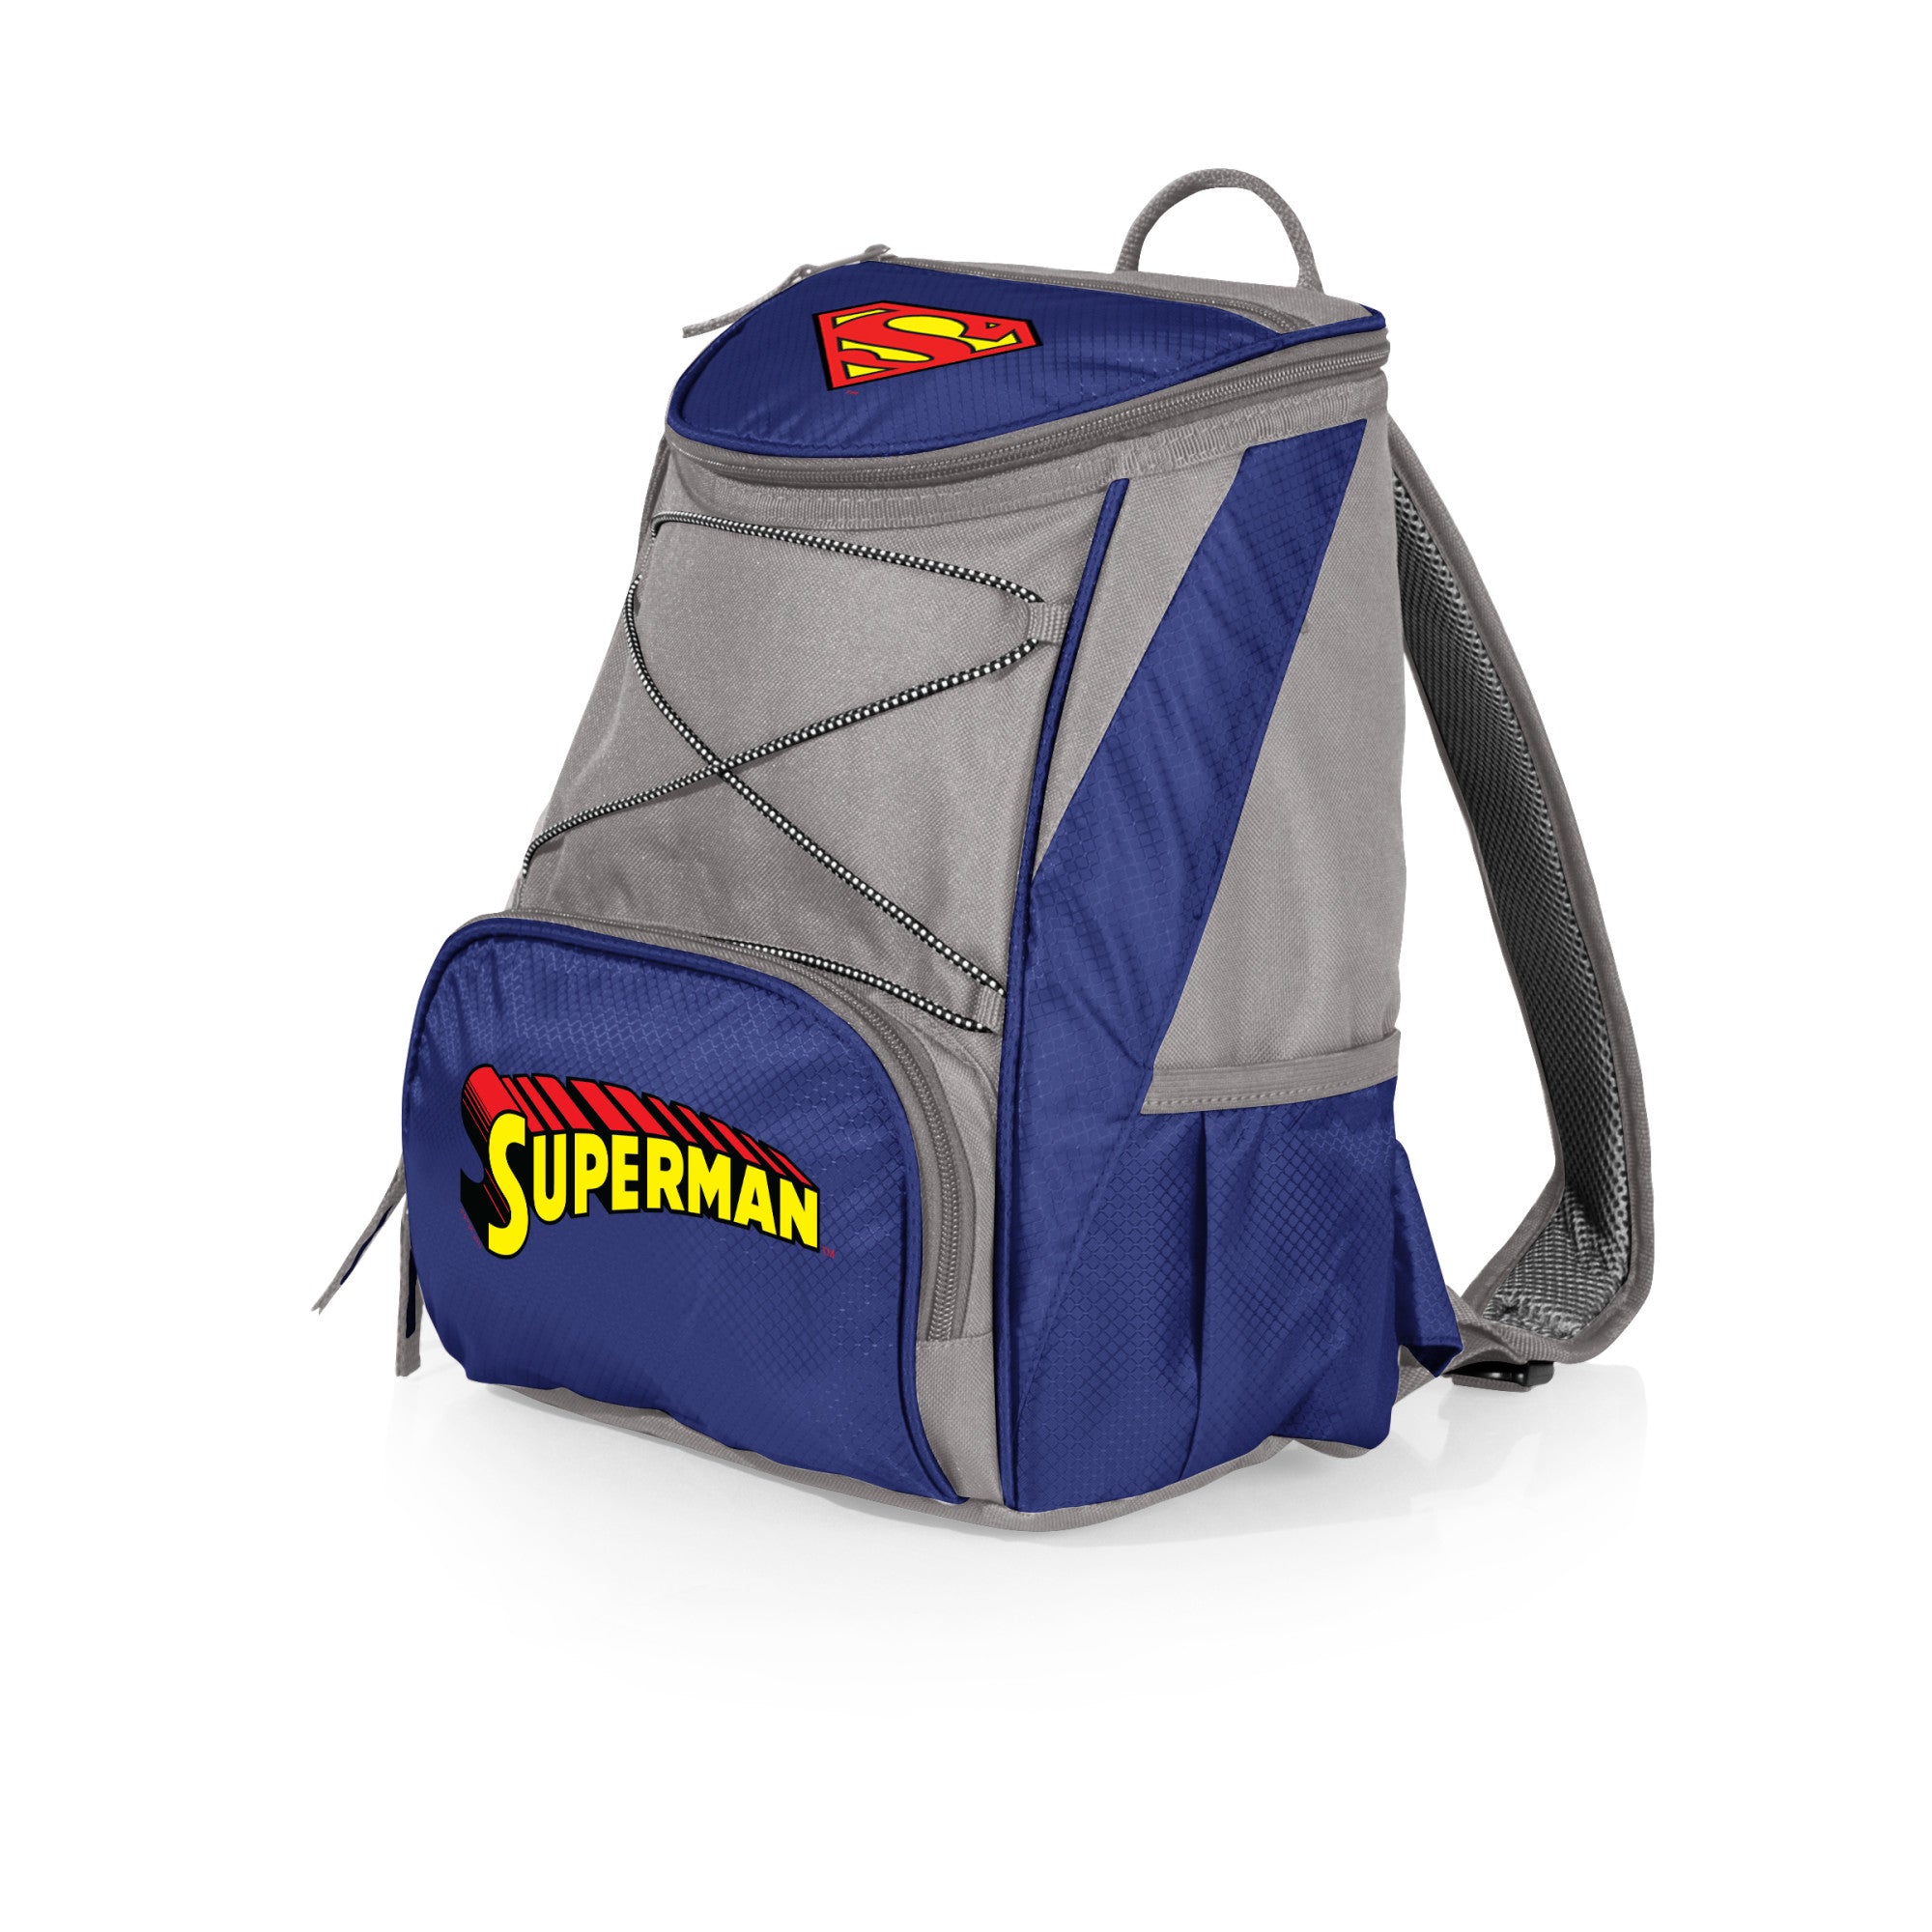 Superman - PTX Backpack Cooler